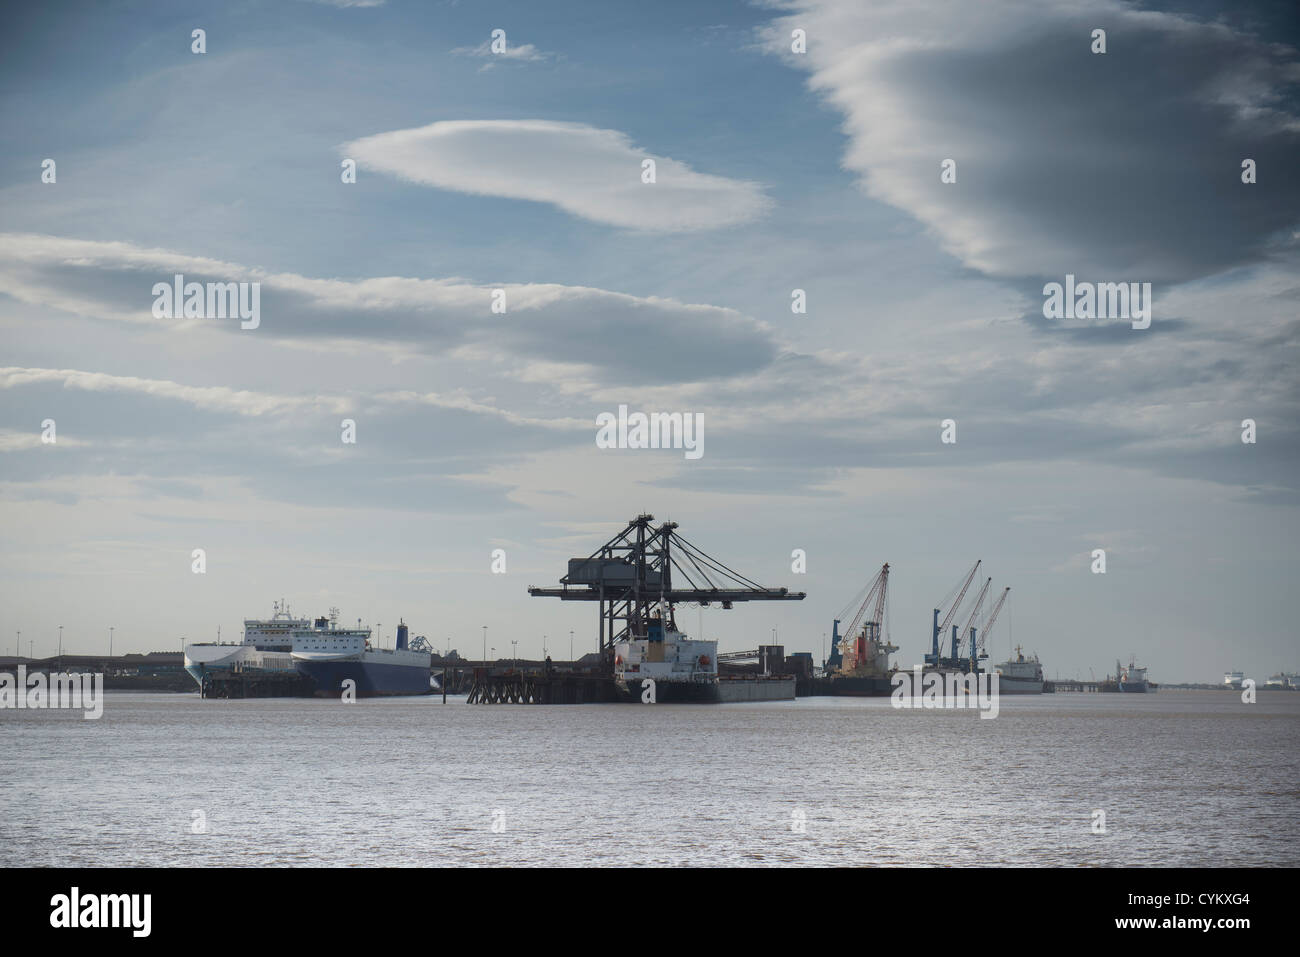 Cranes in industrial harbor Stock Photo